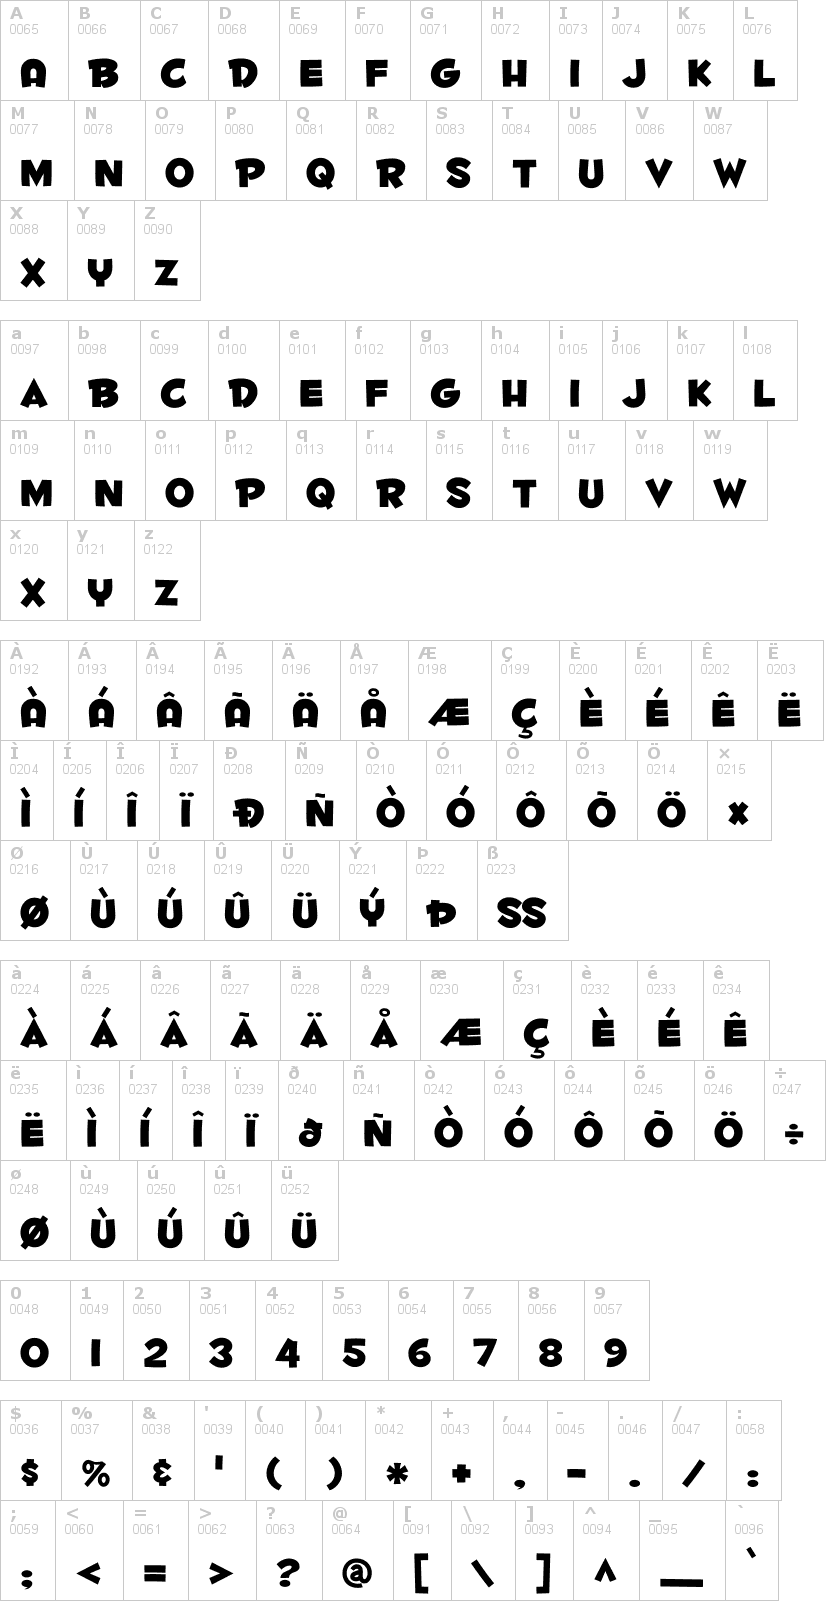 Lettere dell'alfabeto del font fontdinerdotcom-huggable con le quali è possibile realizzare adesivi prespaziati